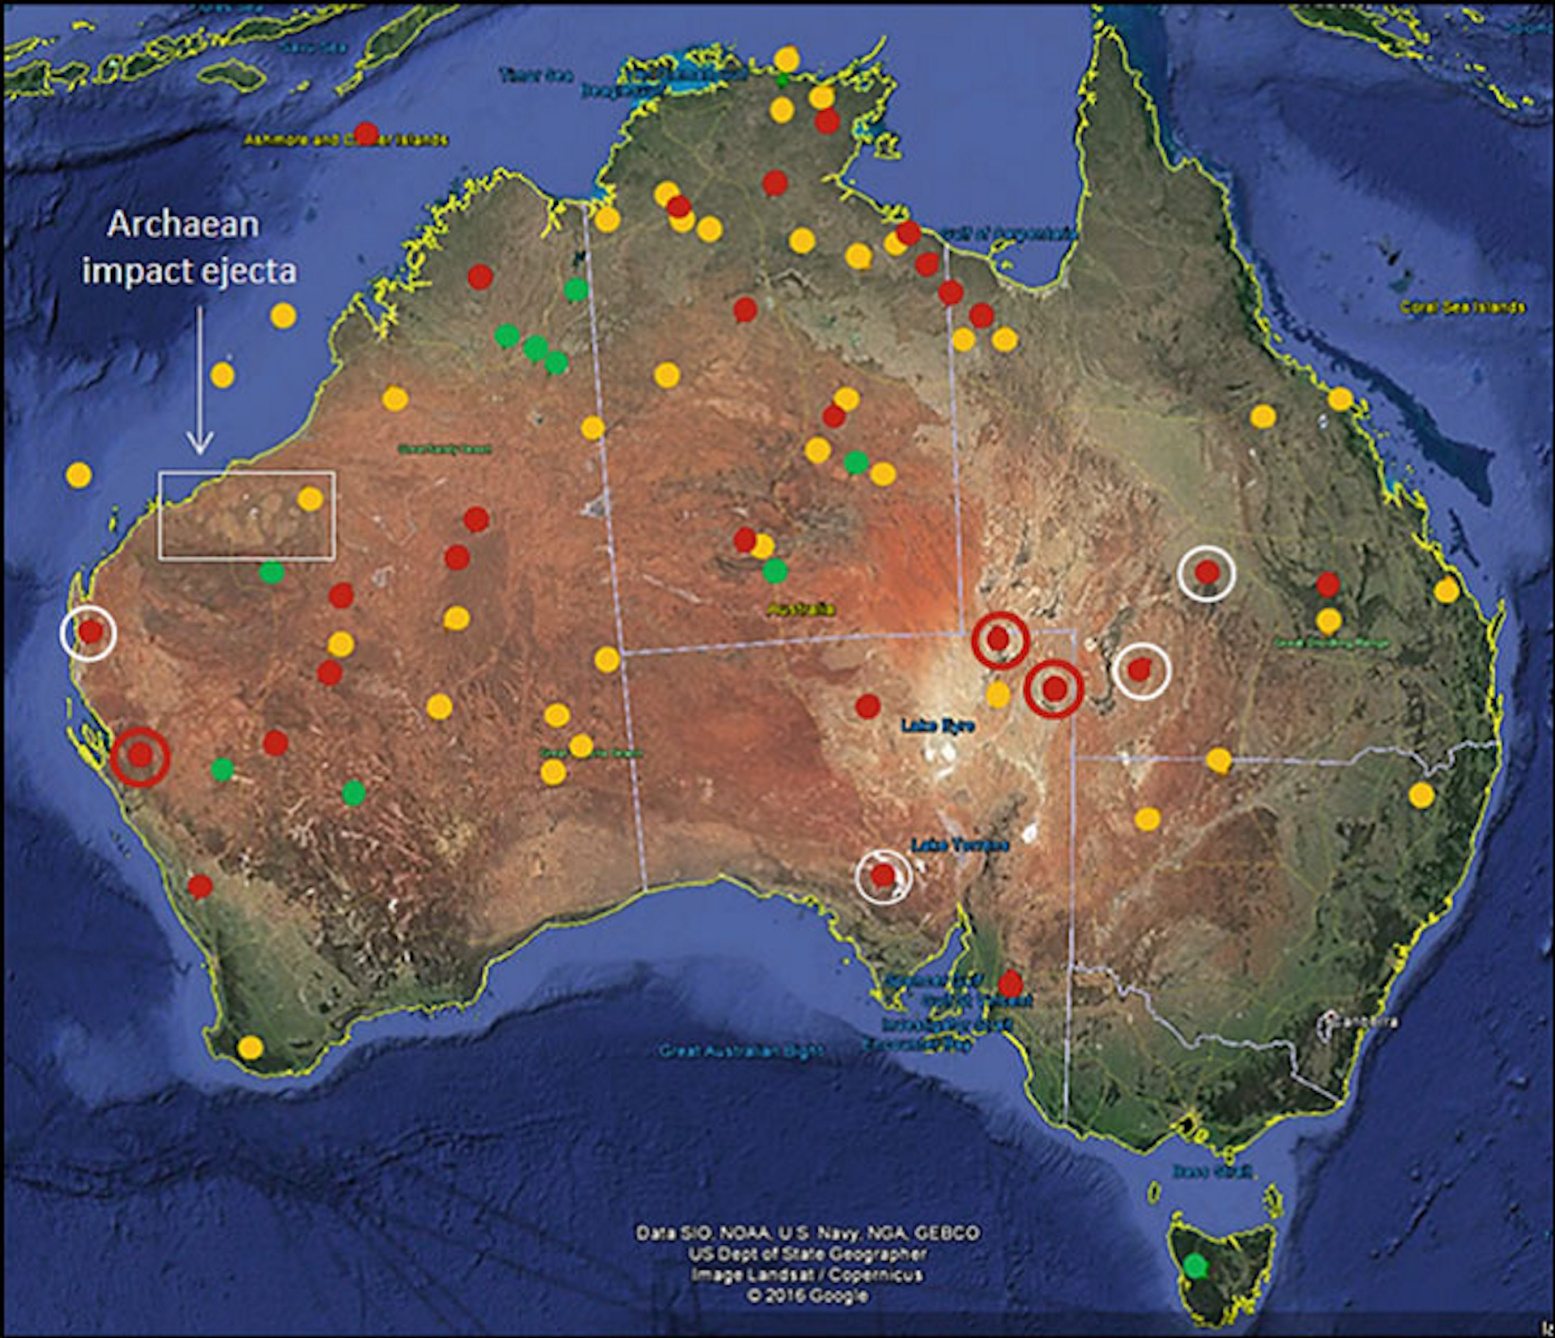 Táto mapa zobrazuje rozmiestnenie kruhových štruktúr neistého, možného alebo pravdepodobného pôvodu vplyvu na austrálskom kontinente a na mori. Zelené bodky predstavujú potvrdené impaktné krátery. Červené bodky predstavujú potvrdené nárazové štruktúry, ktoré sú široké viac ako 100 km, zatiaľ čo červené bodky v bielych kruhoch sú široké viac ako 50 km. Žlté bodky predstavujú pravdepodobné nárazové štruktúry.